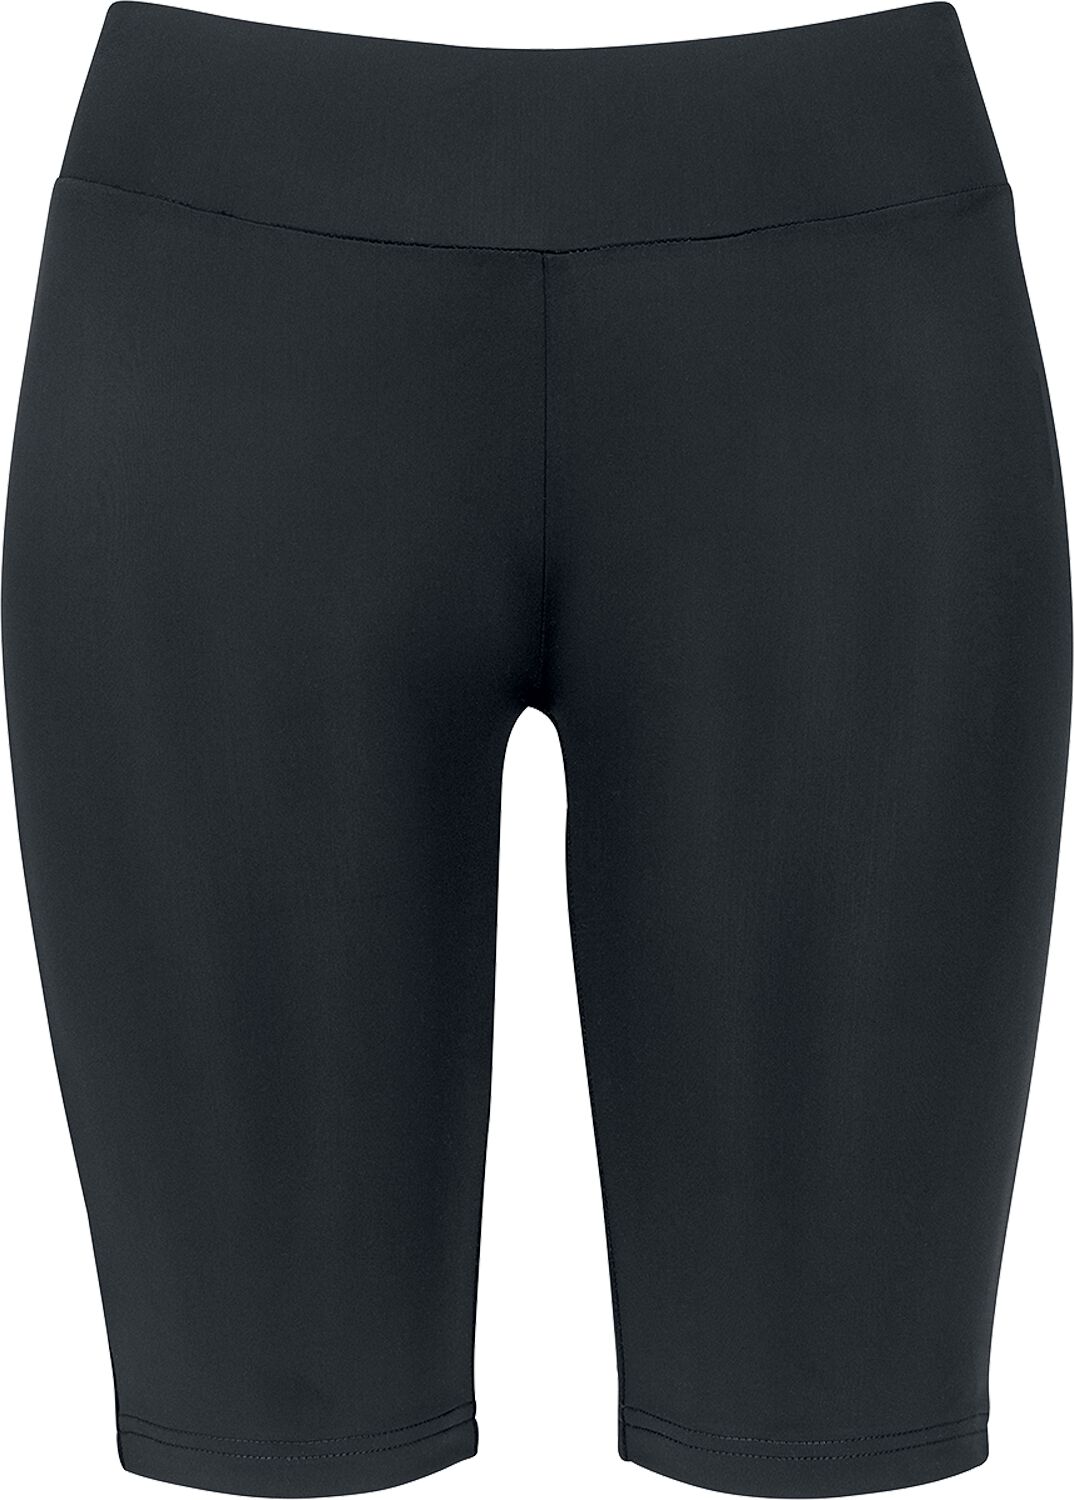 Urban Classics Short - Ladies Cycle Shorts - XS bis XL - für Damen - Größe M - schwarz